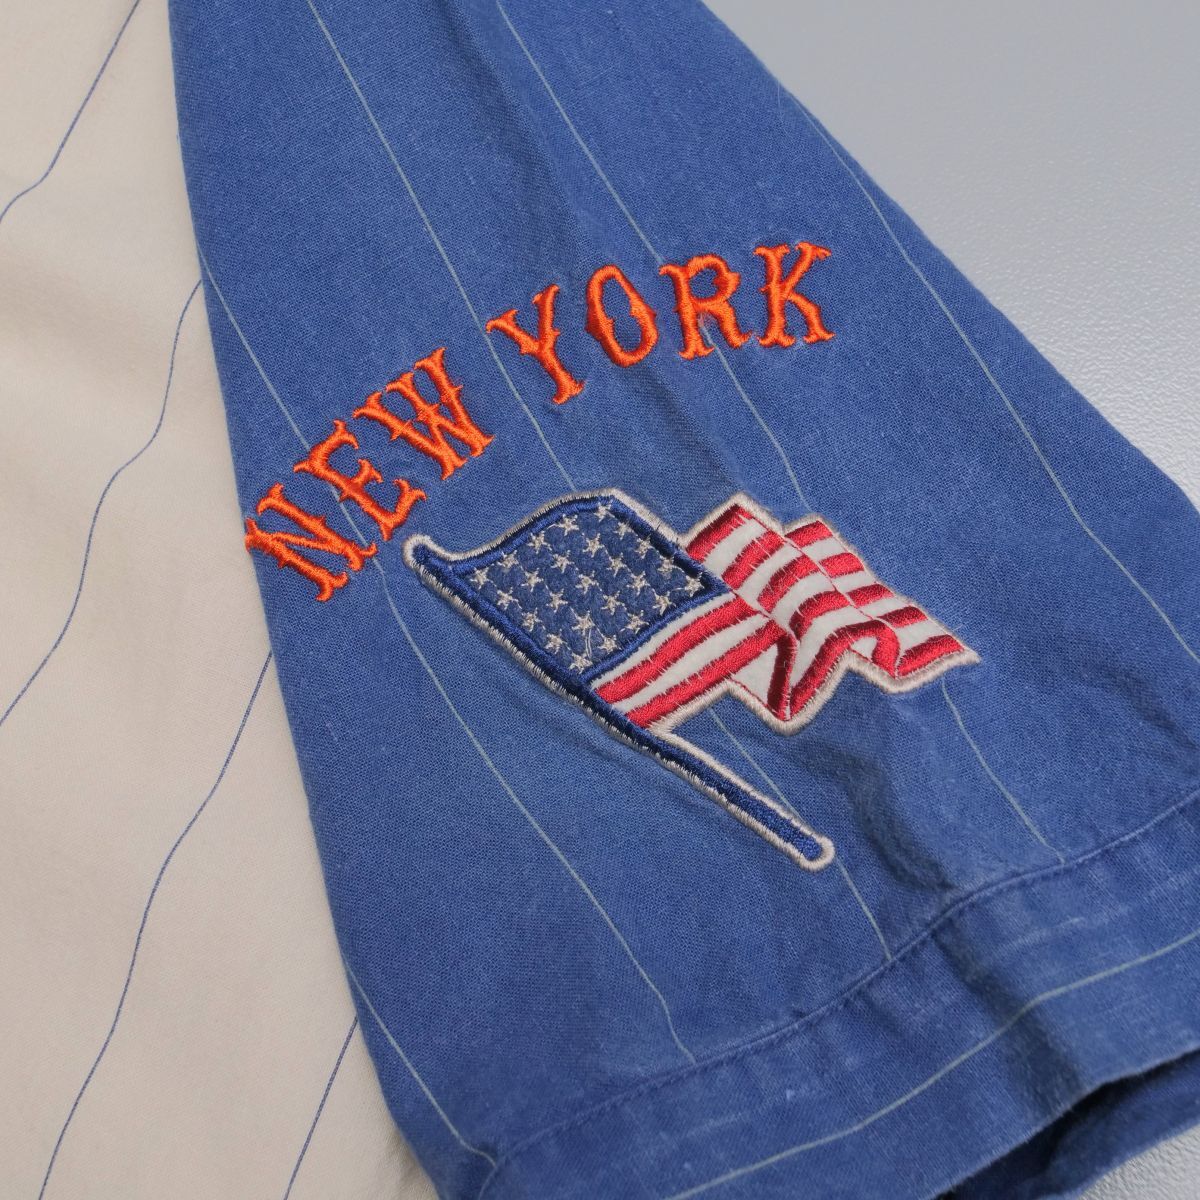 TH4049◎クーパーズタウンコレクション MIRAGE 2点SET ベースボールシャツ Mets ニューヨーク メッツ + ニューヨークヤンキース 麻綿 L/XL